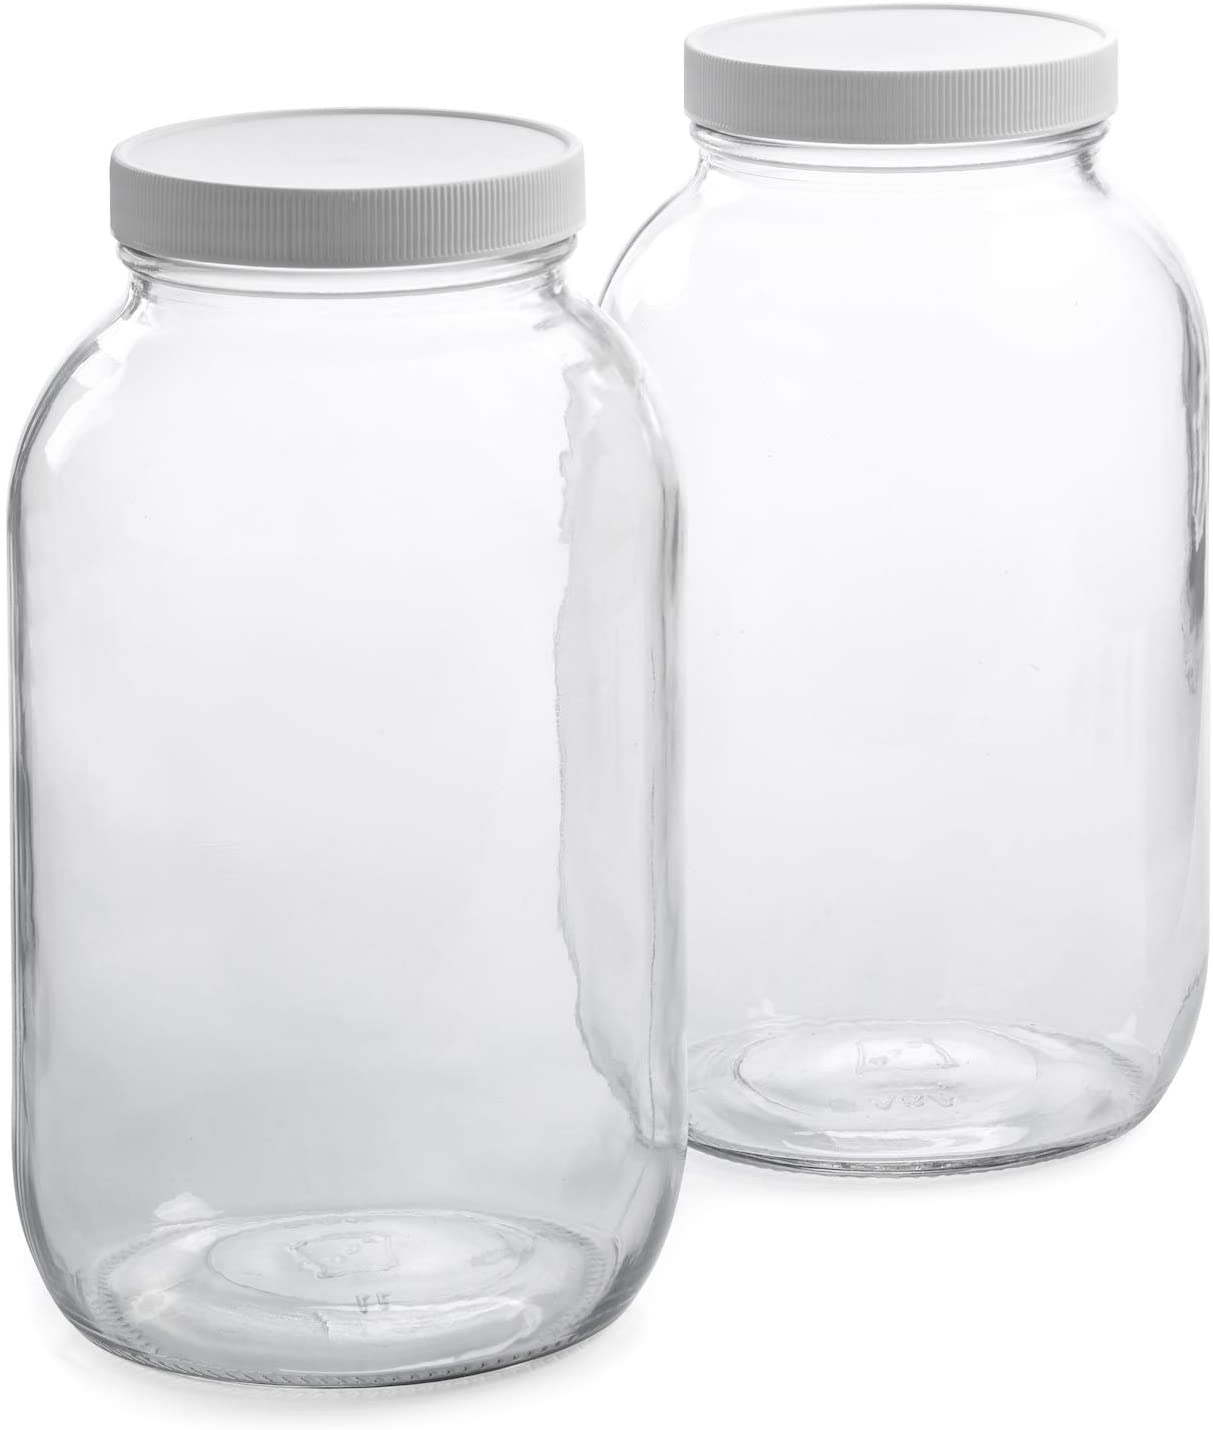 Half gallon glass jar